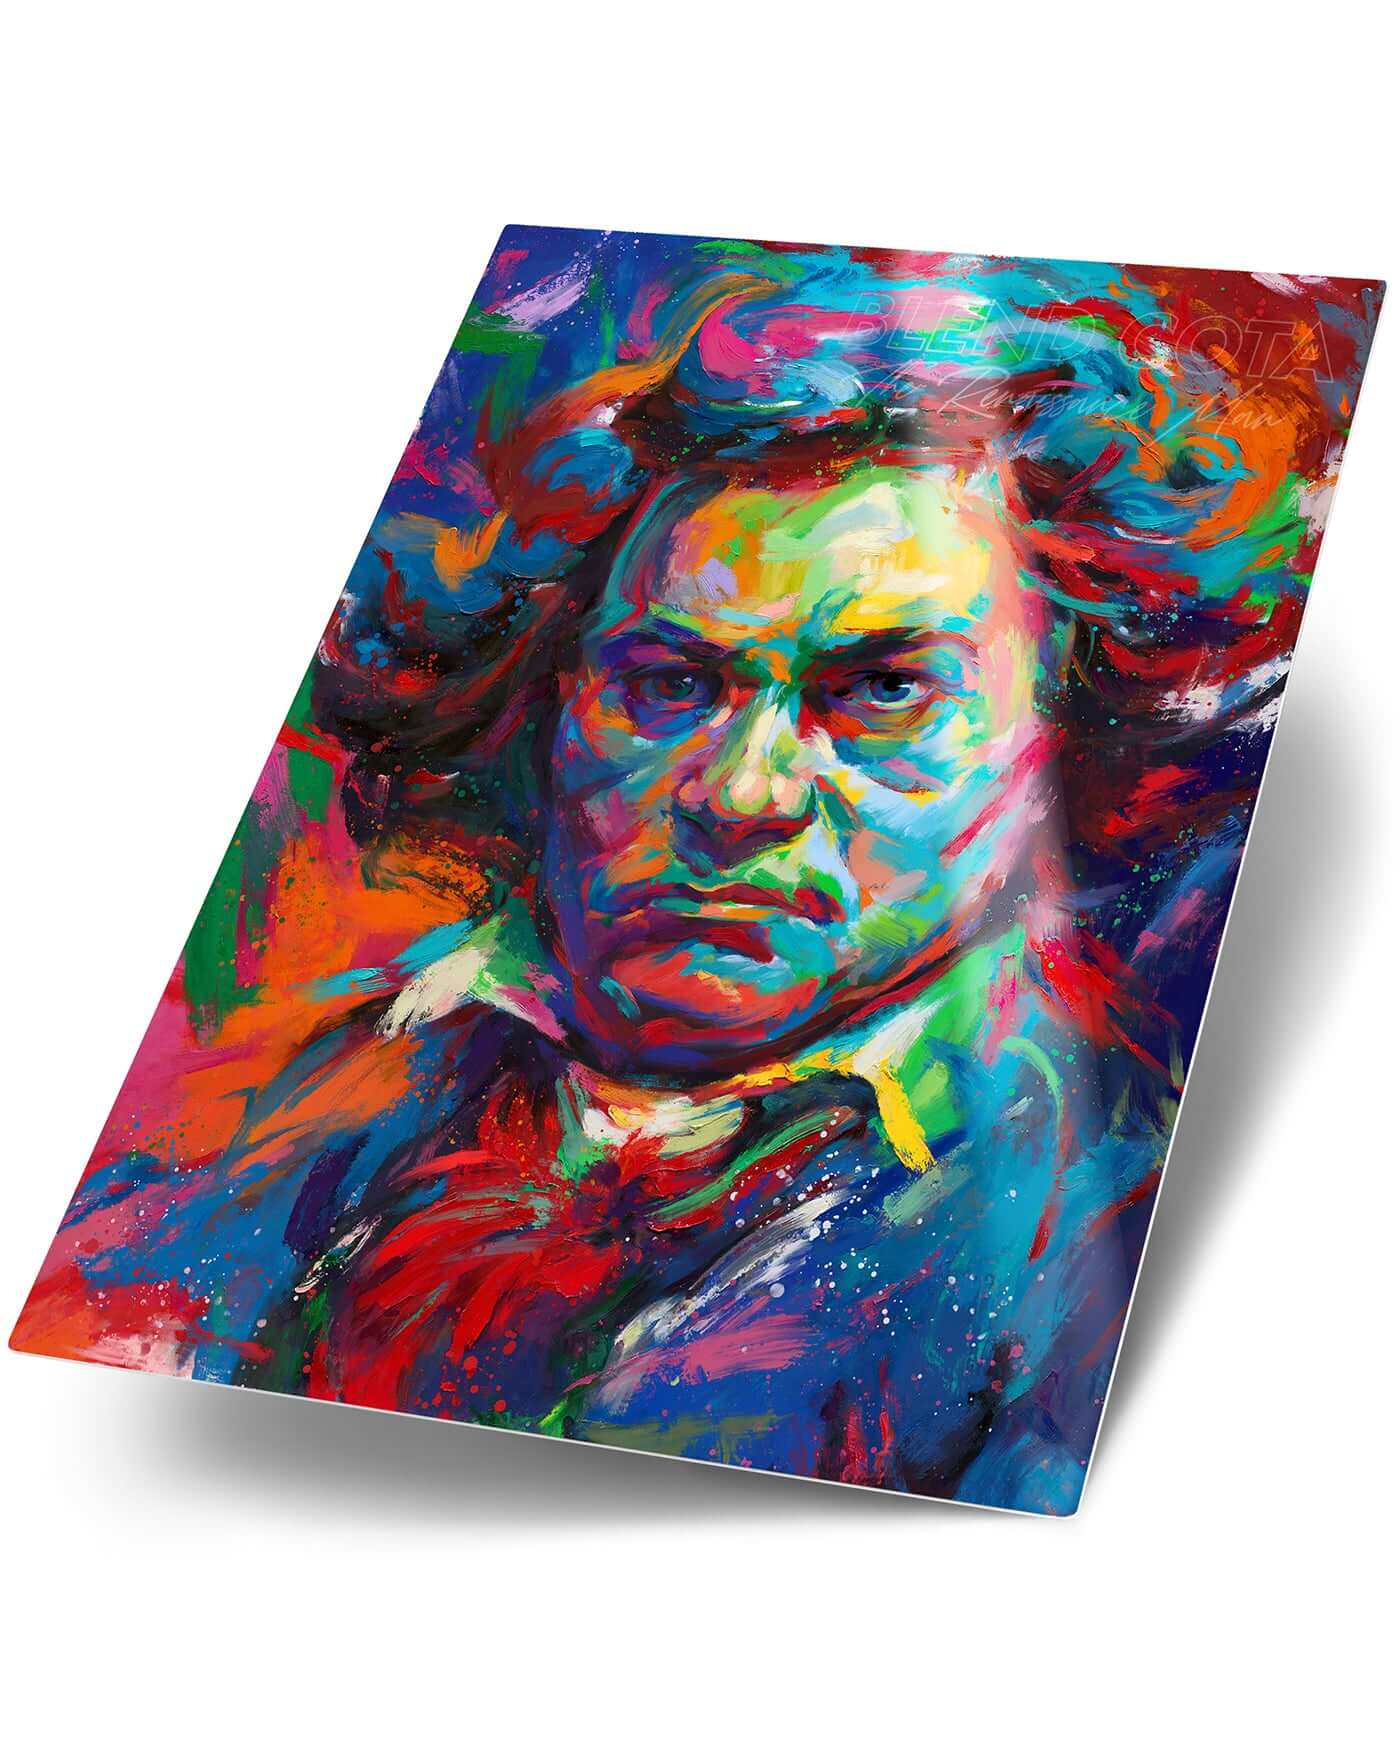 Beethoven - A Symphony of Color - Blend Cota Art Print on Metal - Blend Cota Studios